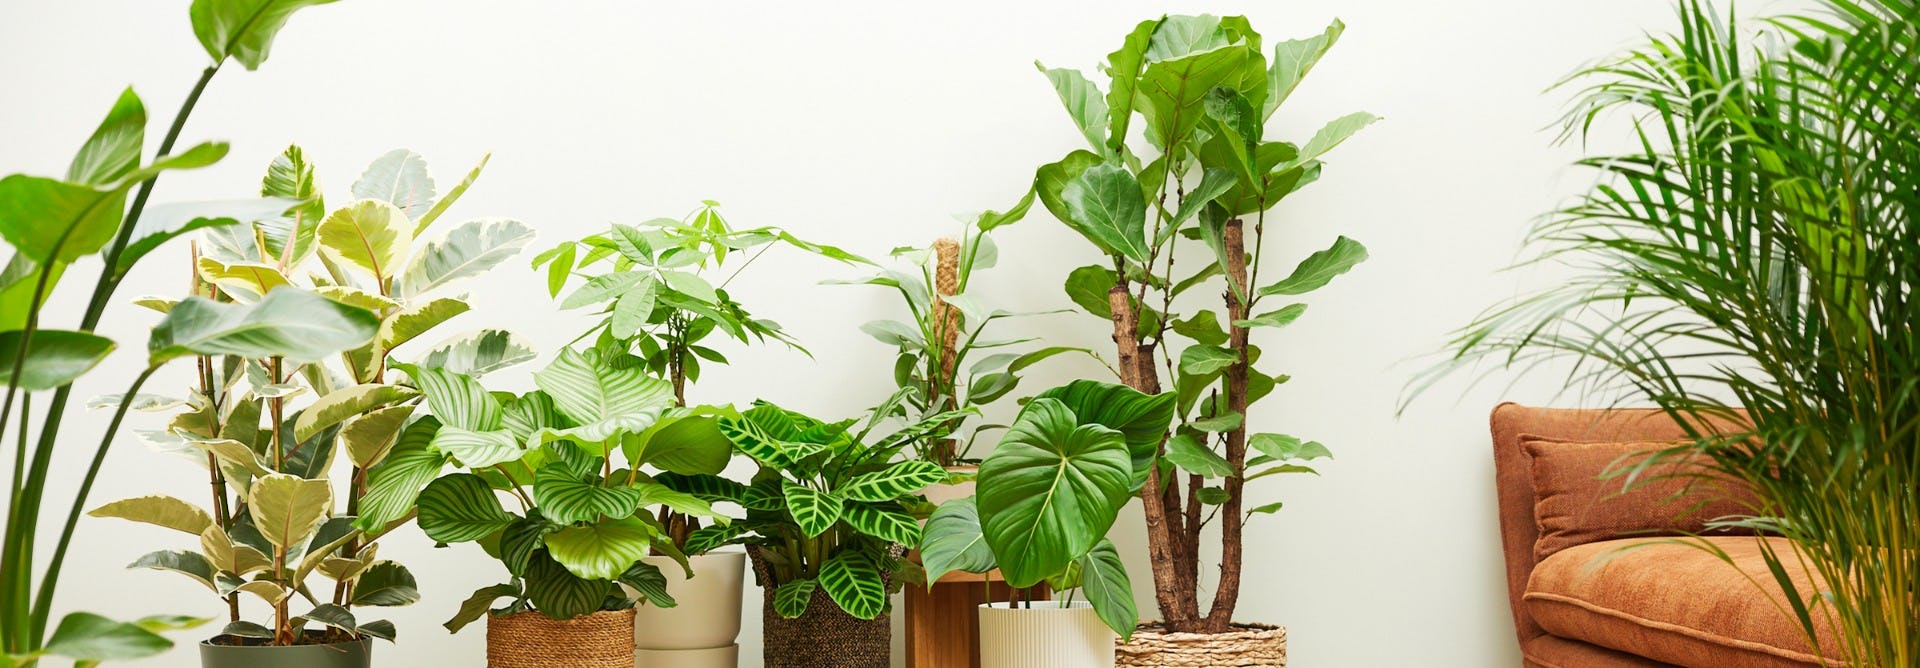 Meilleur terrarium : notre guide d'achat pour vos plantes vertes